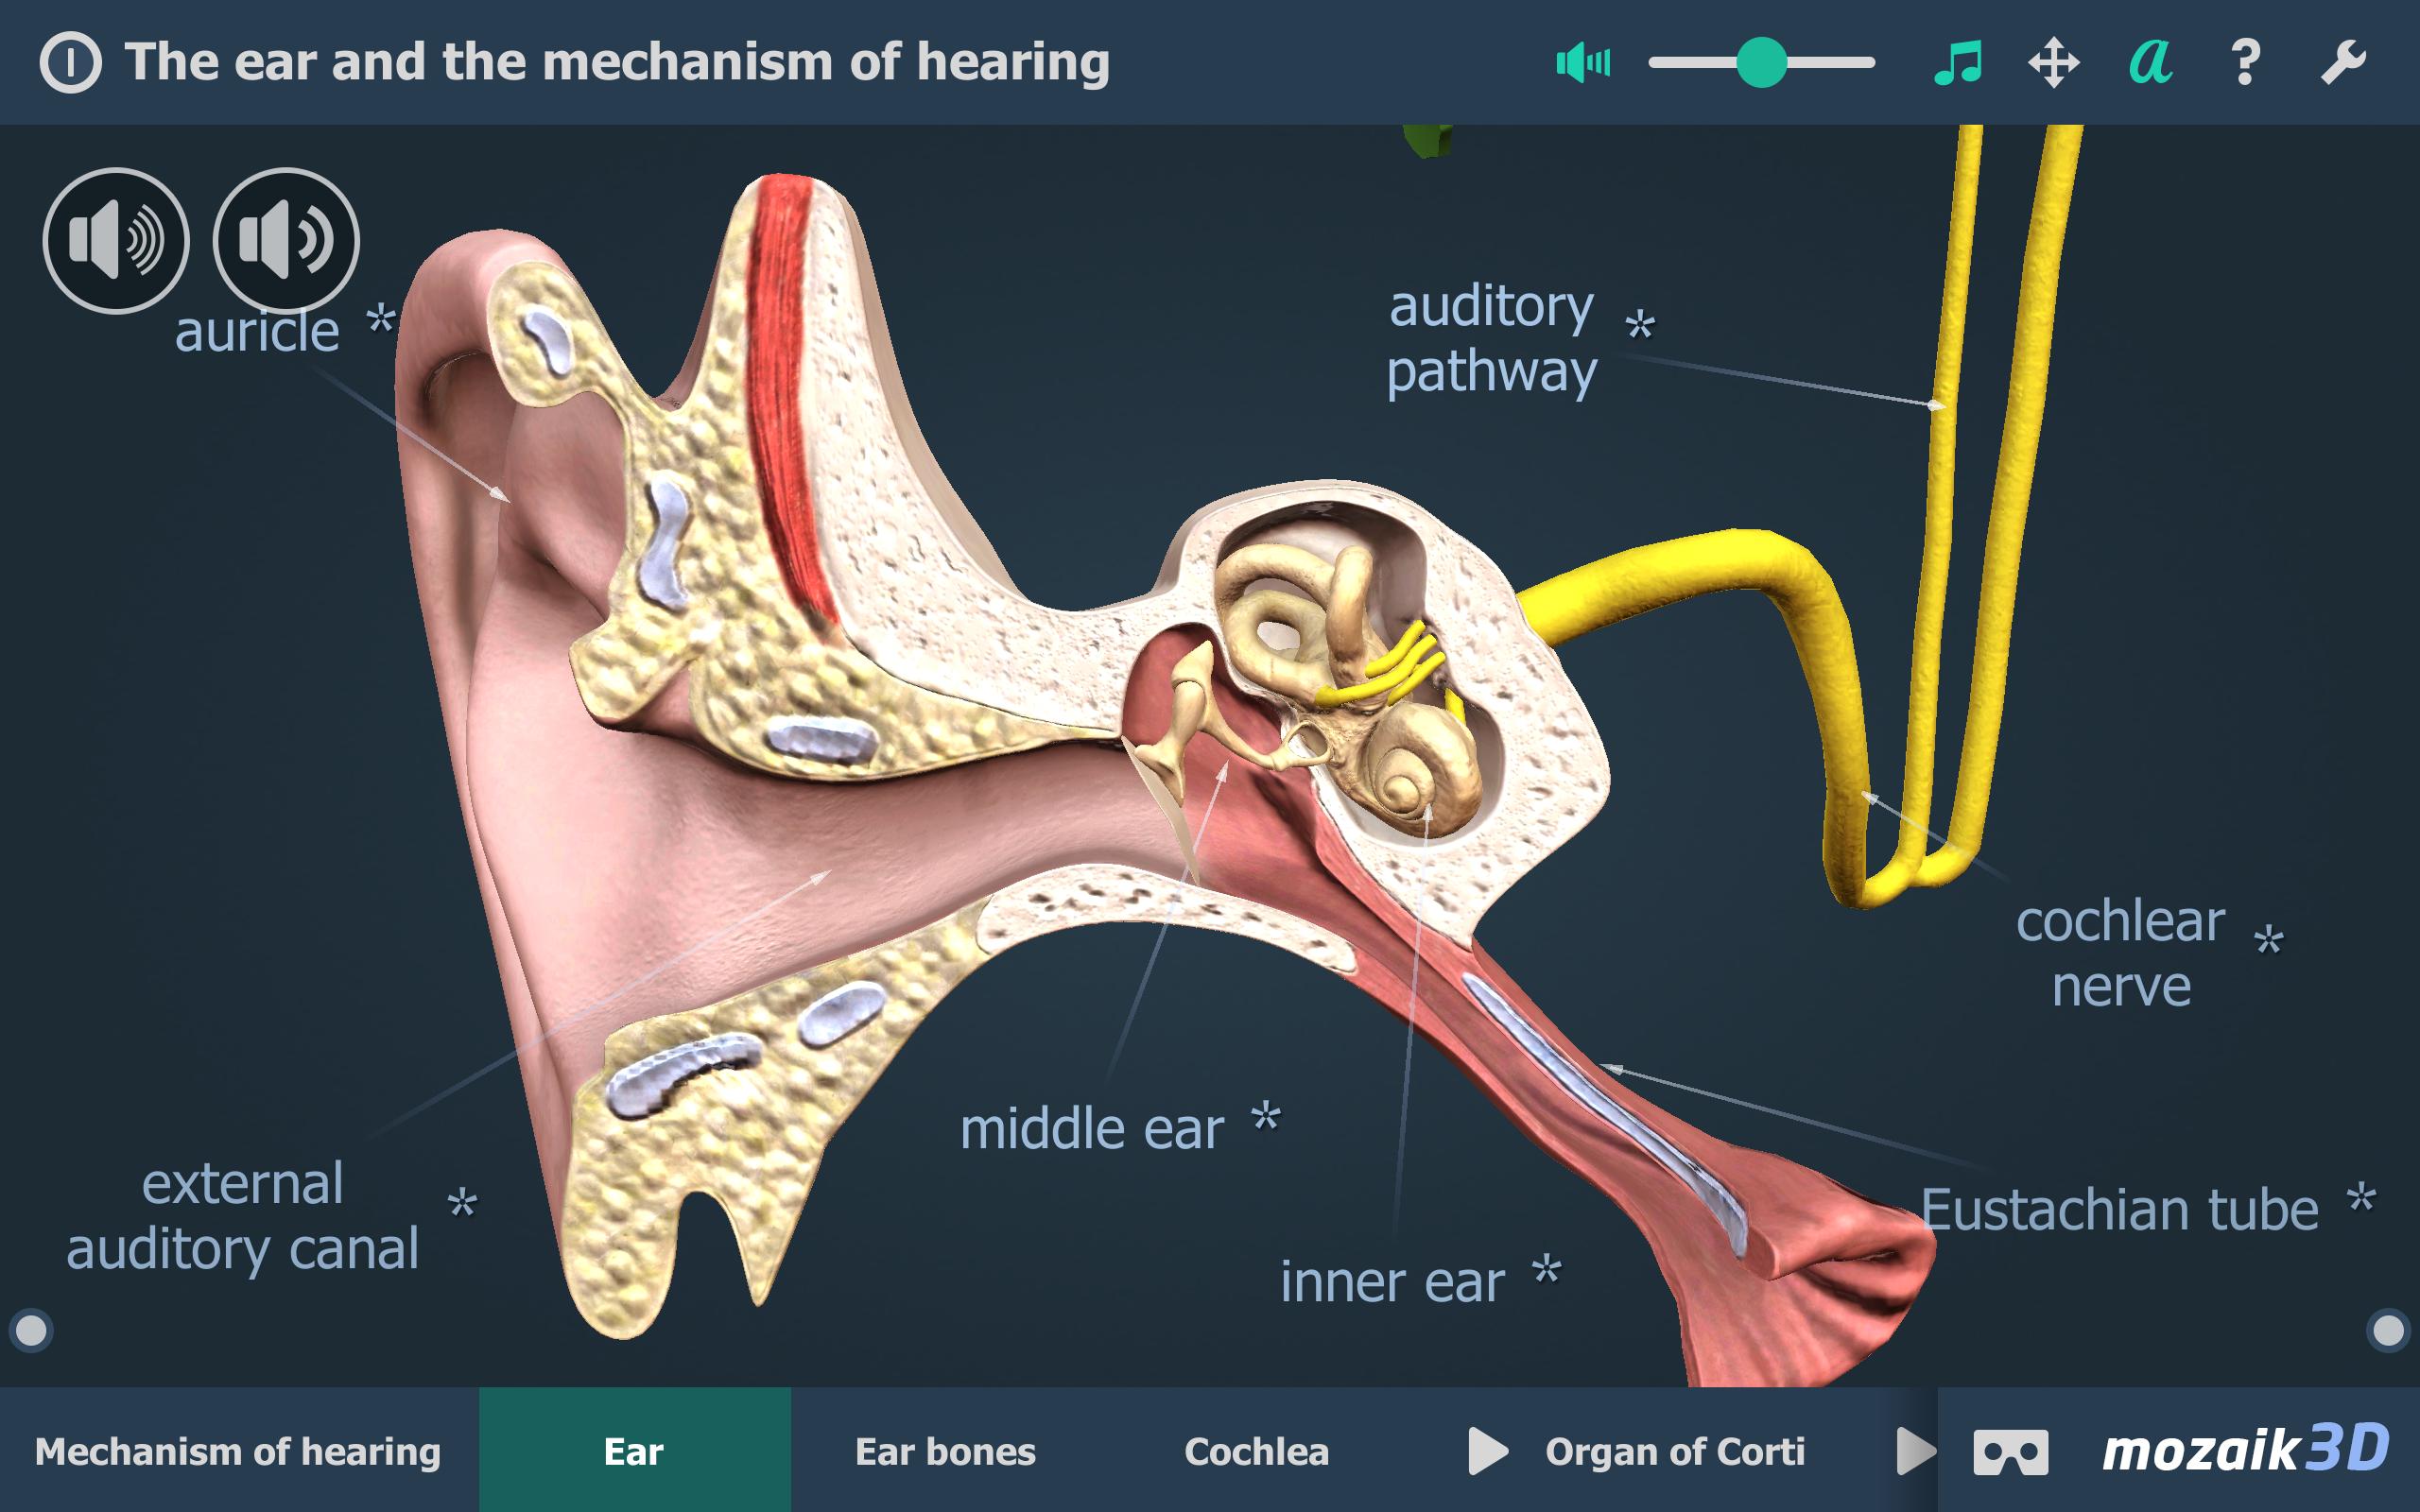 Слышит 3 буквы. Mozaik 3d ухо. Слуховой процесс в 3d. Евстахиева труба соединяет полость среднего уха с носоглоткой. Hear 3.